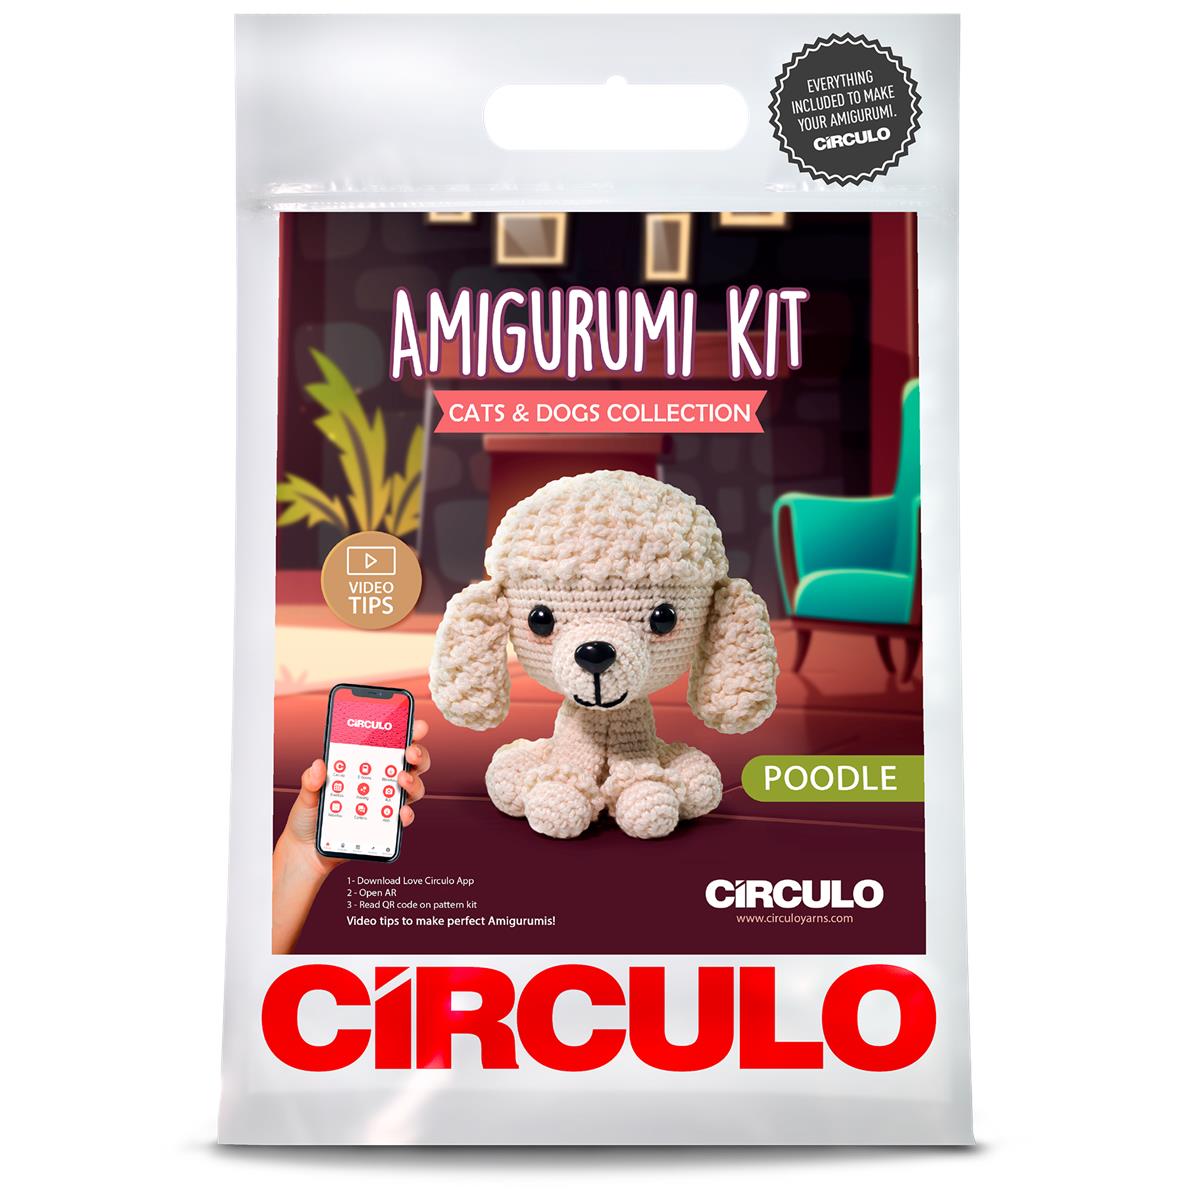 Crochet Kittens amigurumi kit